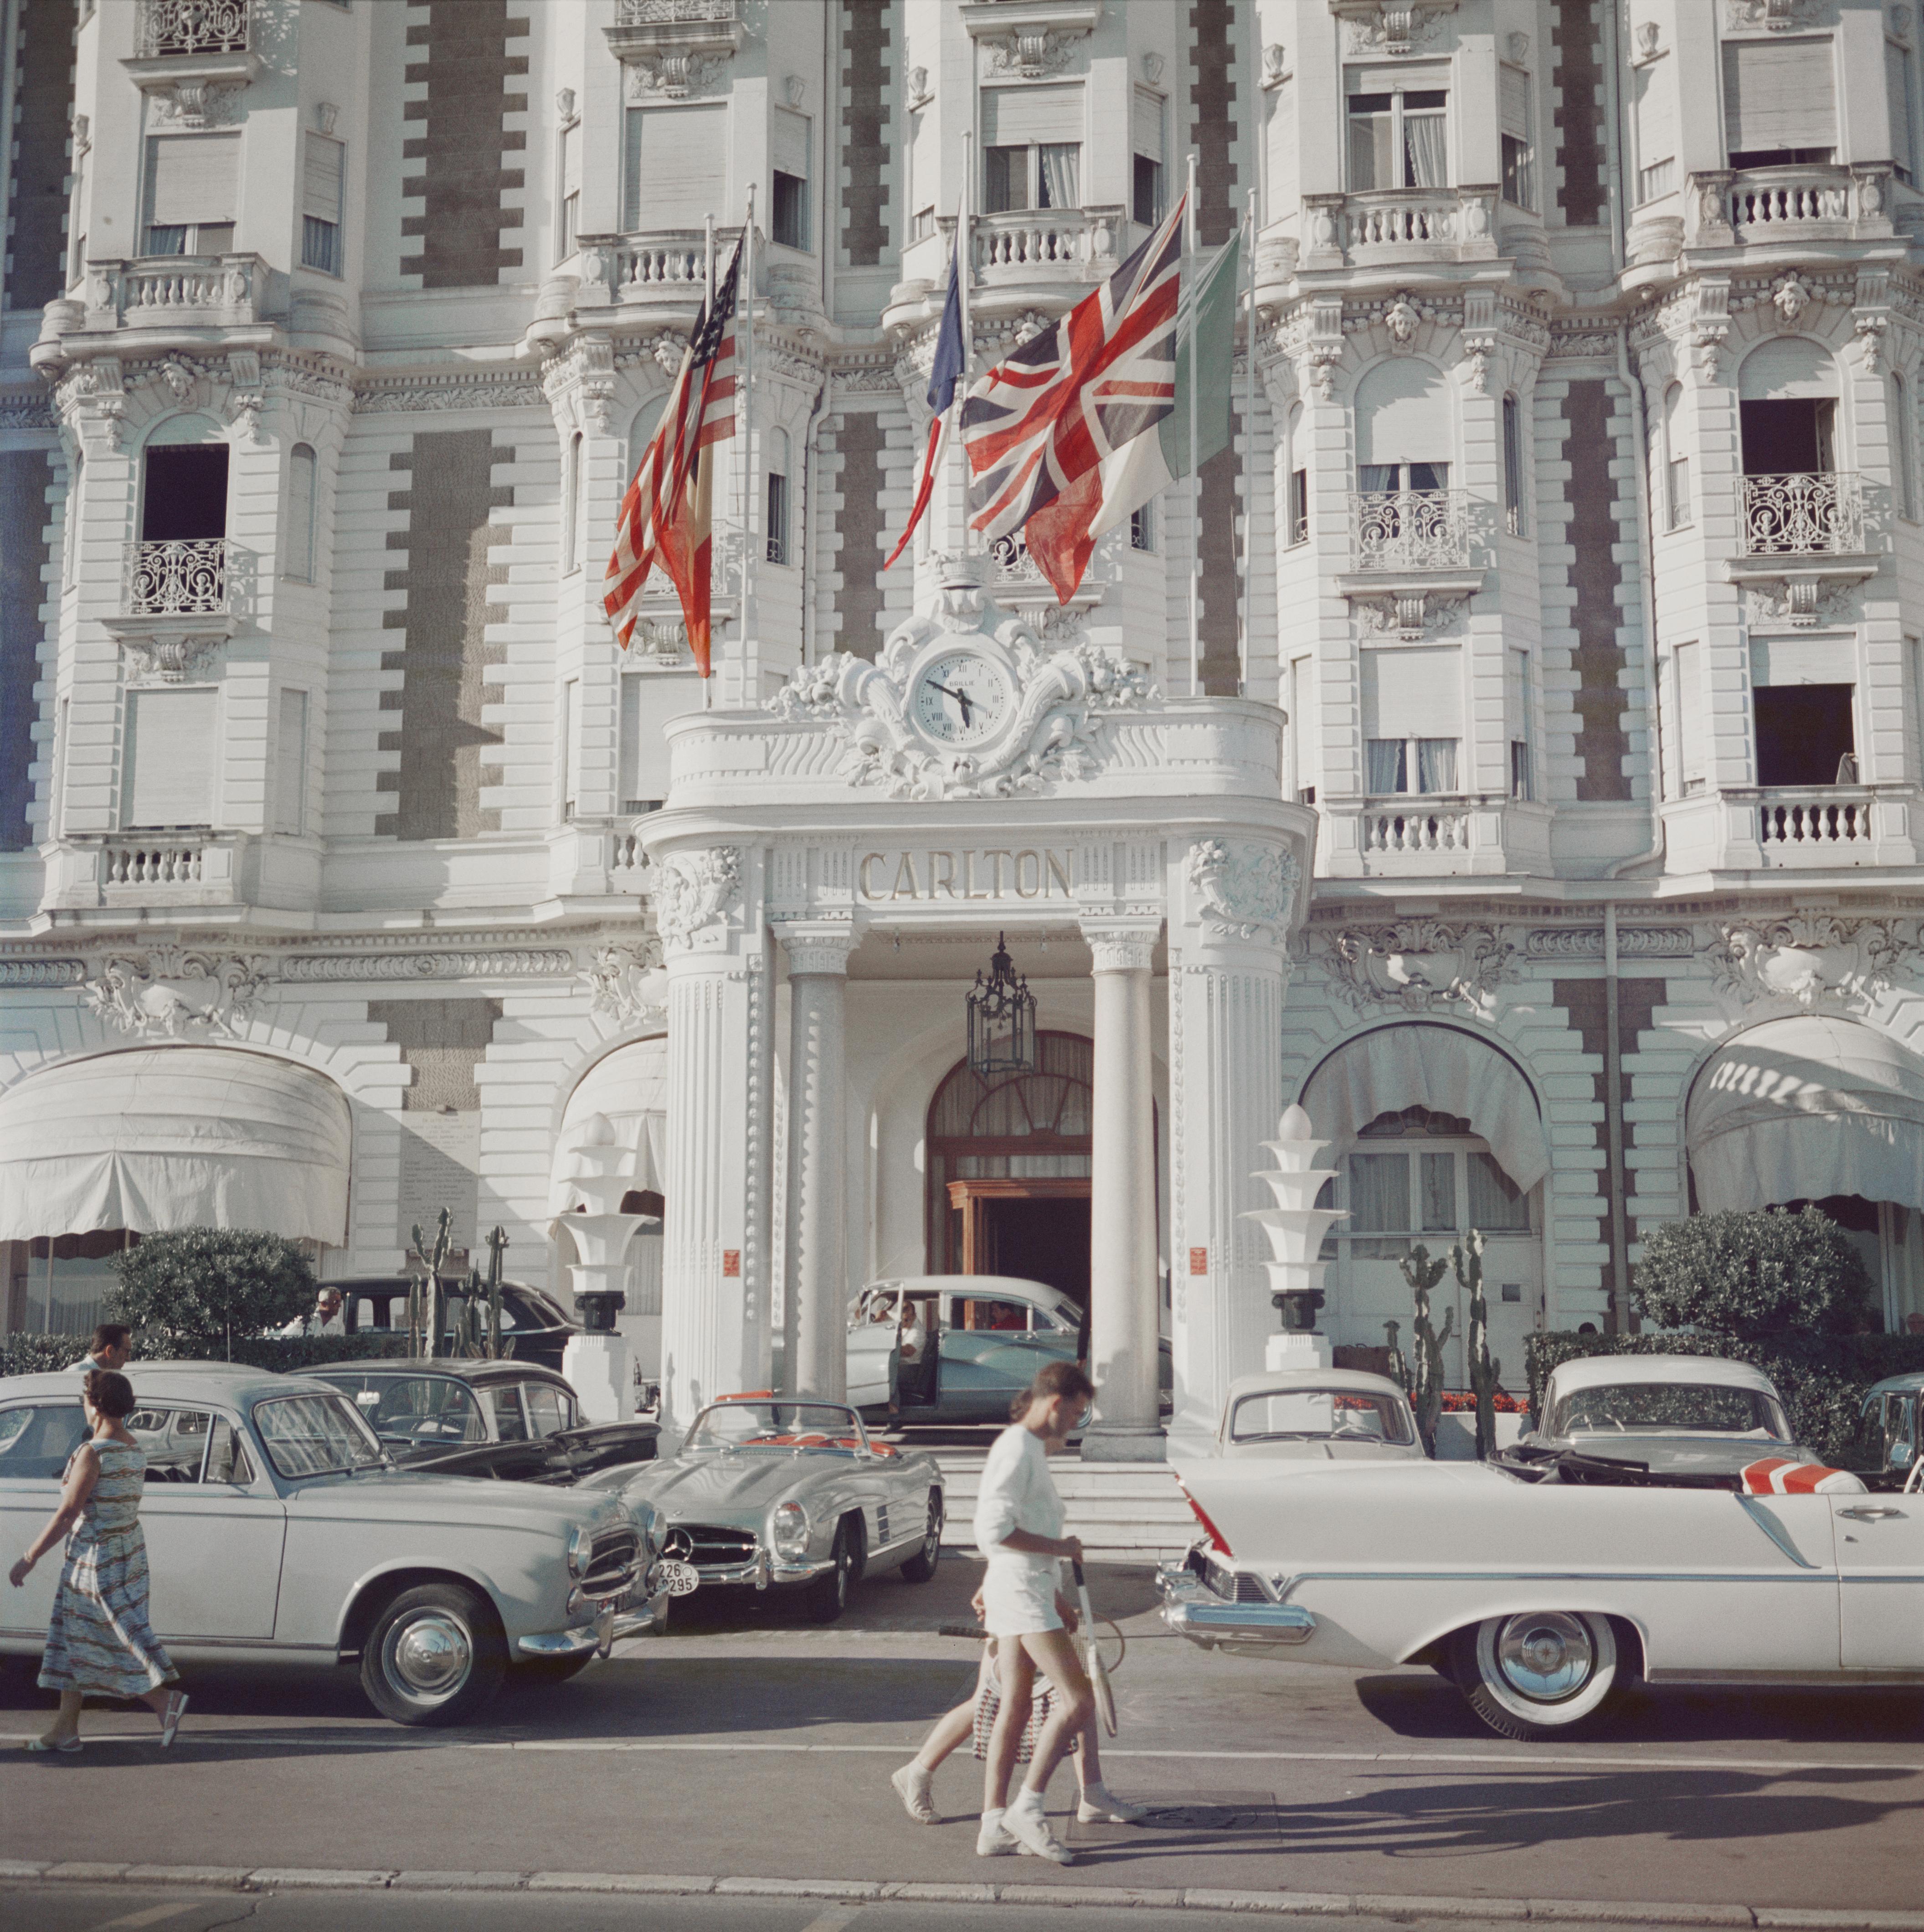 Der Eingang zum Carlton Hotel, Cannes, Frankreich, 1958, später gedruckt. 

Schlanke Aarons
Hotel Carlton
Lambda-Druck
Slim Aarons Estate Edition
Optionen für die Rahmung verfügbar

60 x 60 Zoll
$5100

48 x 48 Zoll
$4500

40 x 40 Zoll
$3950

30 x 30